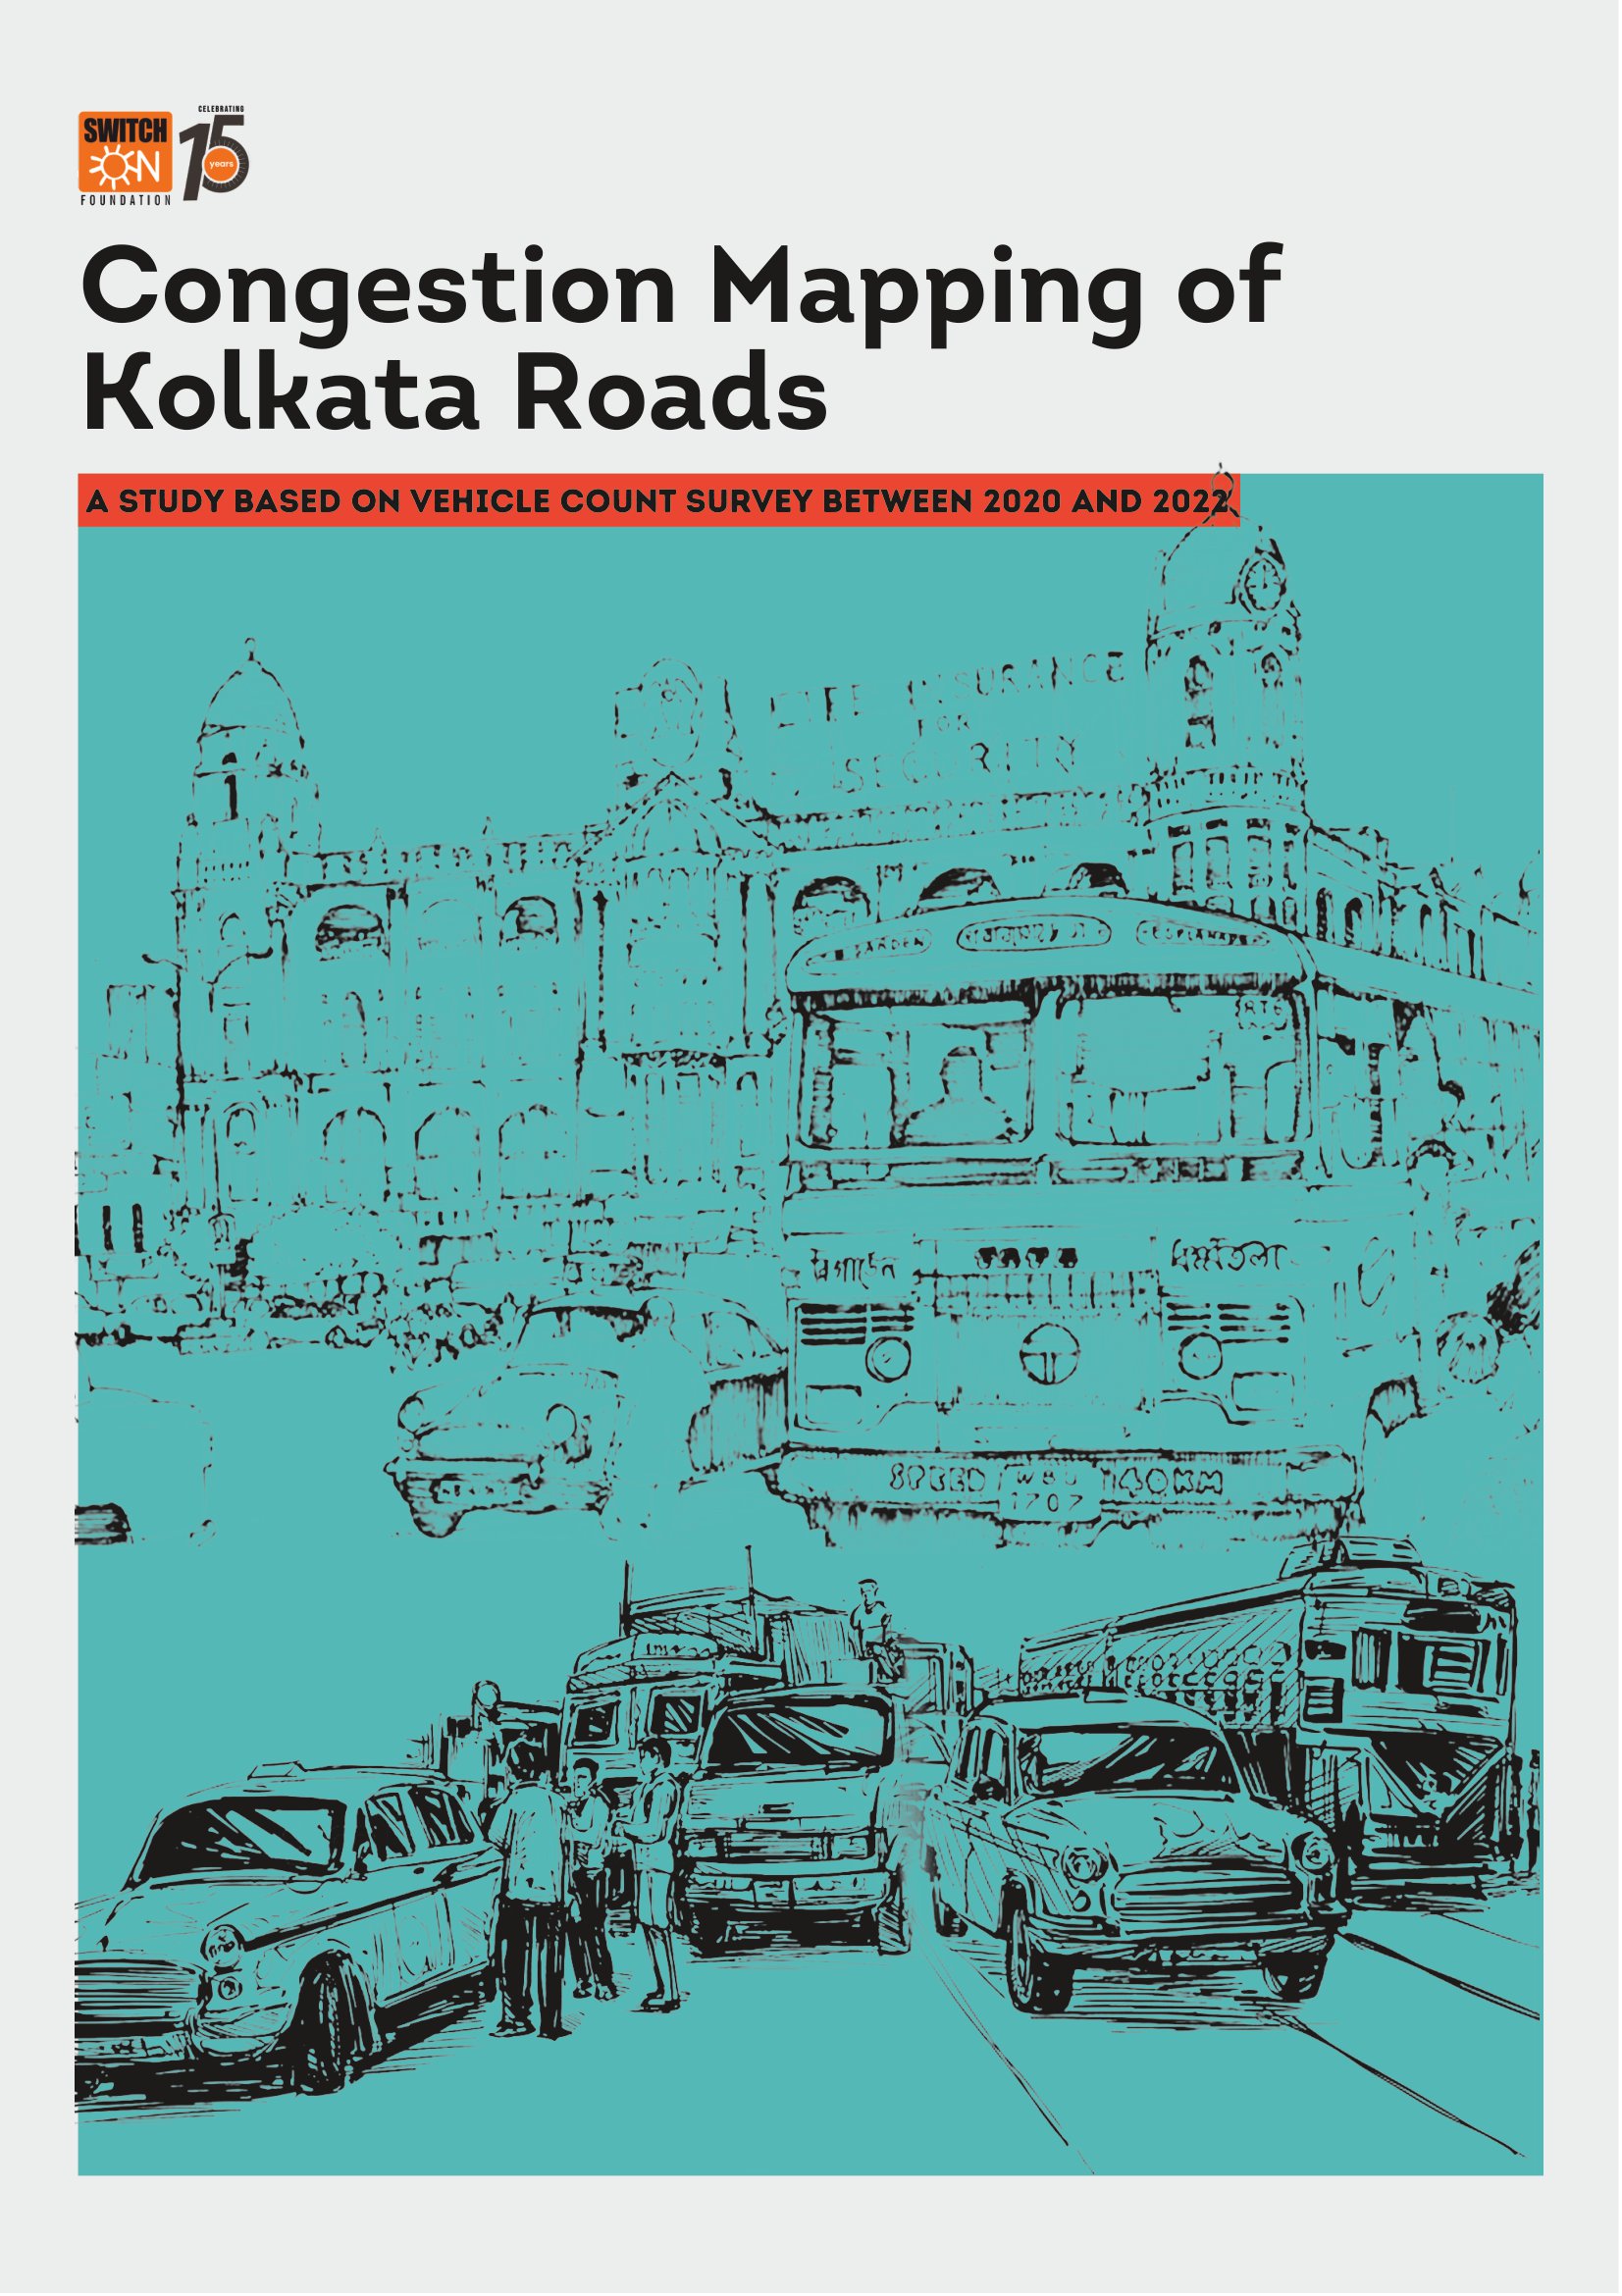 Congestion Mapping on Kolkata Roads